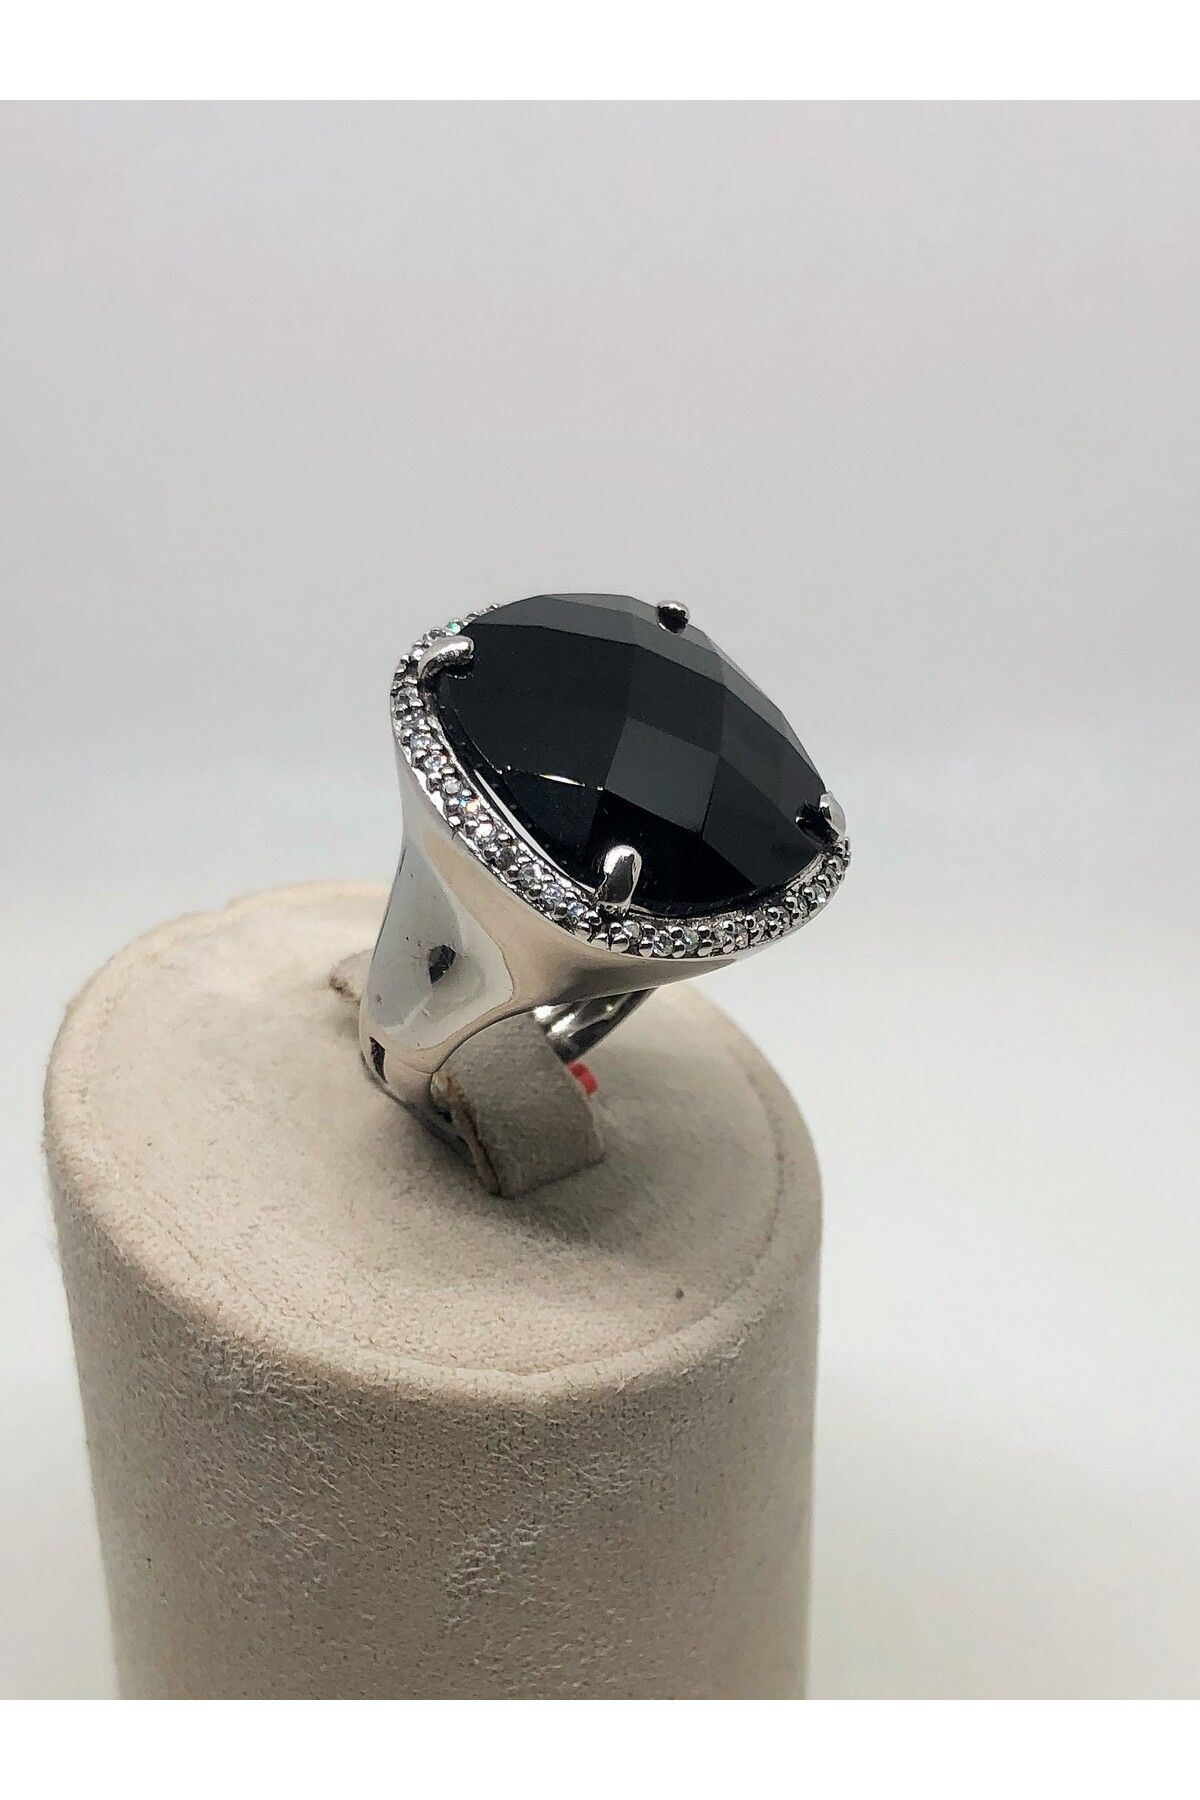 Pekin Diamond Özel Tasarım Siyah Oniks ve Zirkon Taşlı 925 ayar Gümüş yüzük